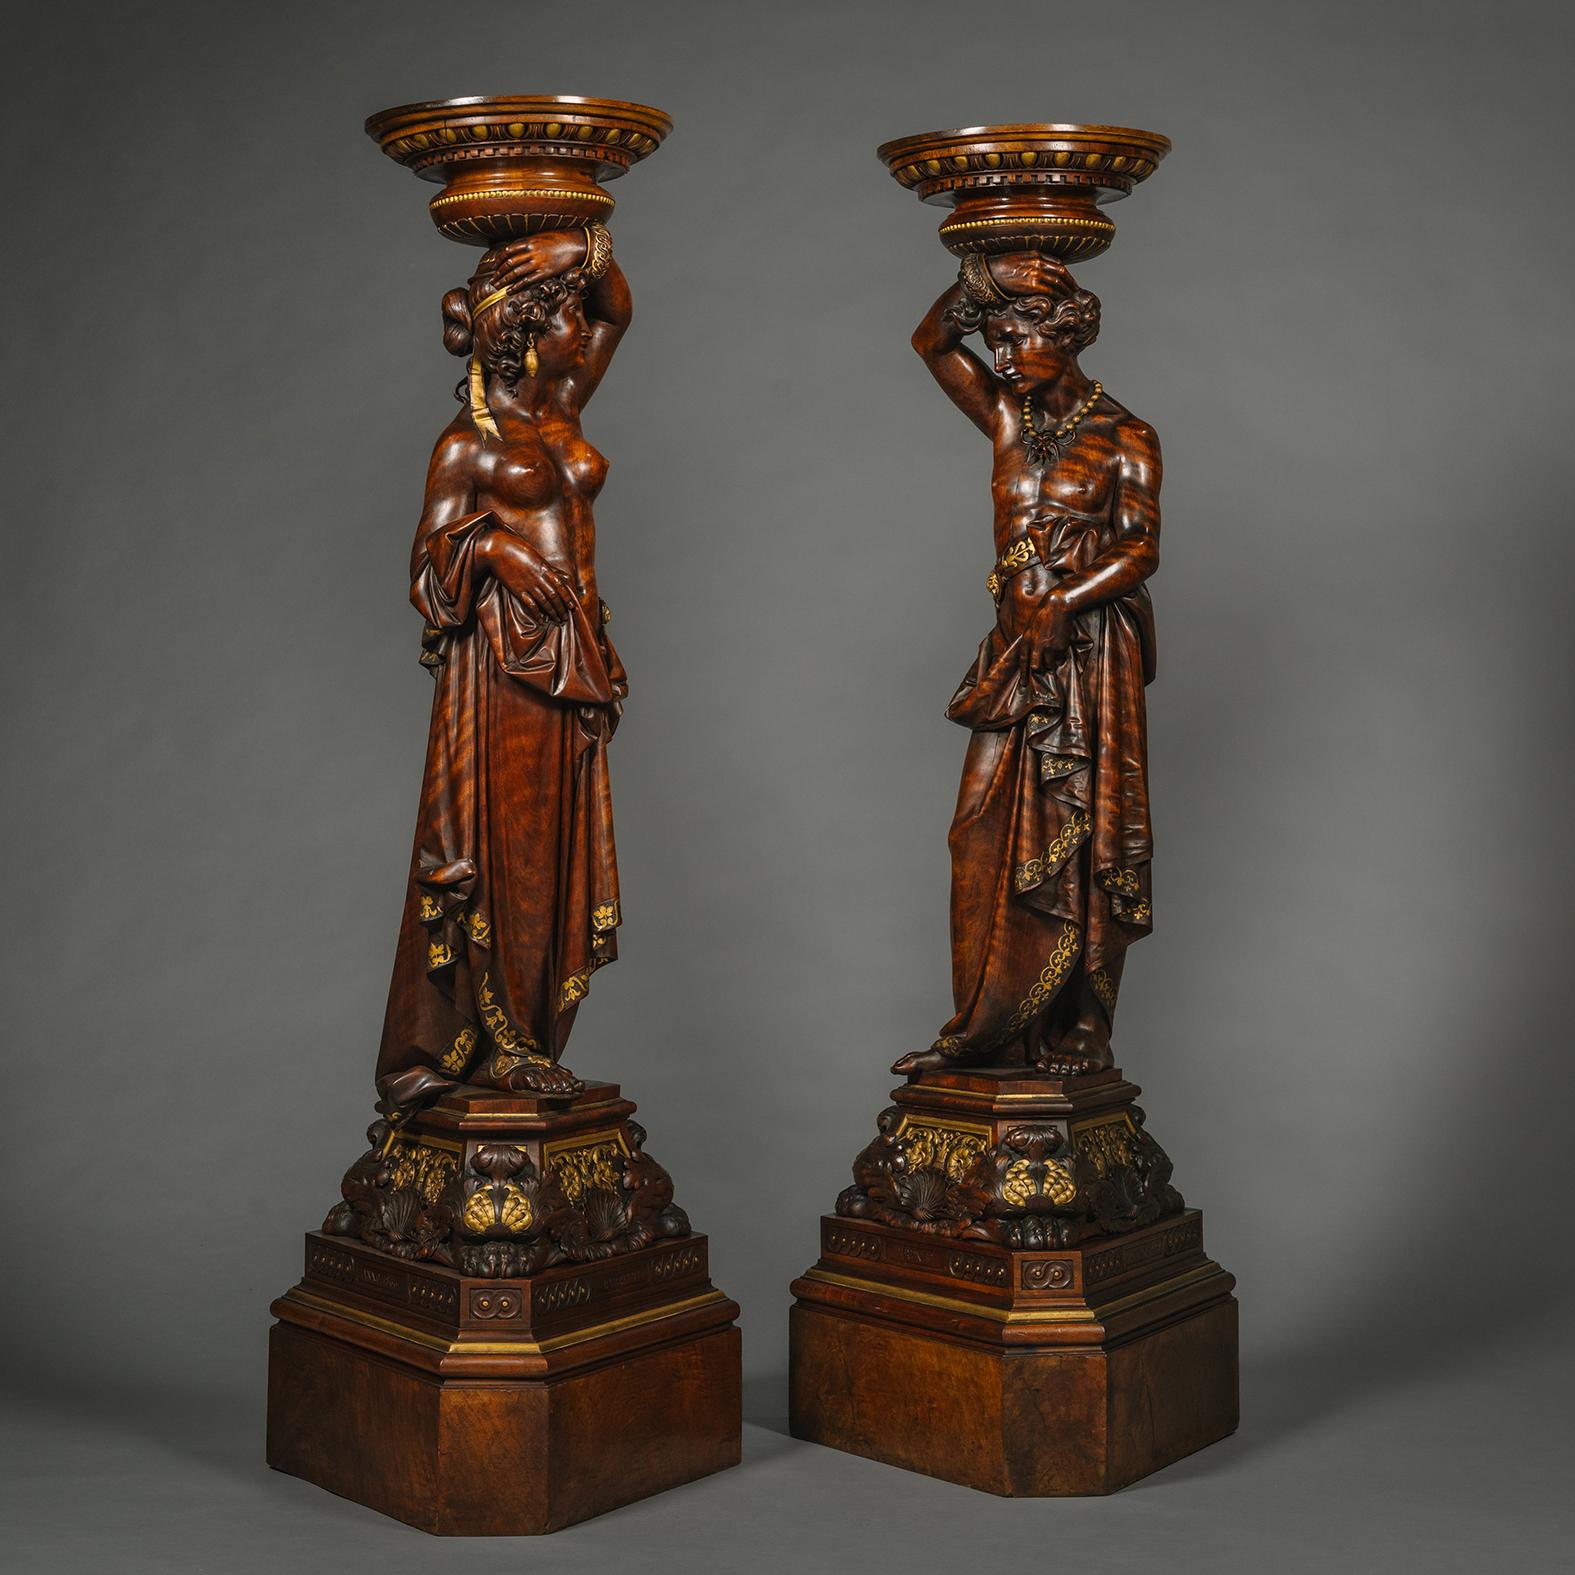 Paire de torchères figuratives italiennes en noyer sculpté et parchemin doré par Angiolo Barbetti, (1805-1873) Florence. 

Signé 